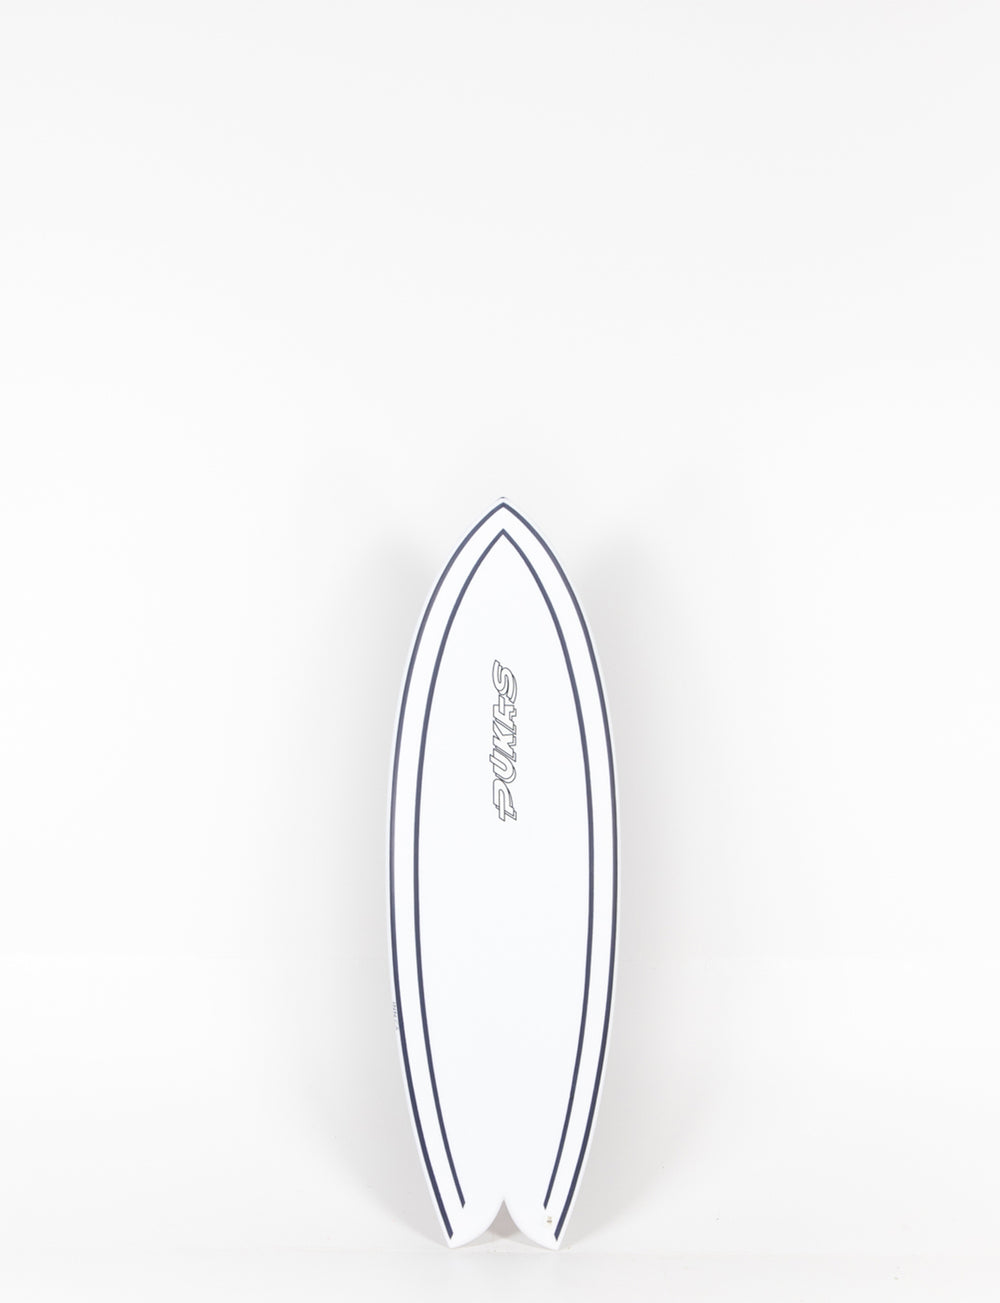 Pukas Surfboard - INNCA Tech - WOMBI FISH by Eye Symmetry - 5’06” x 20 3/4 x 2 5/16 x 29.9L Ref:0002